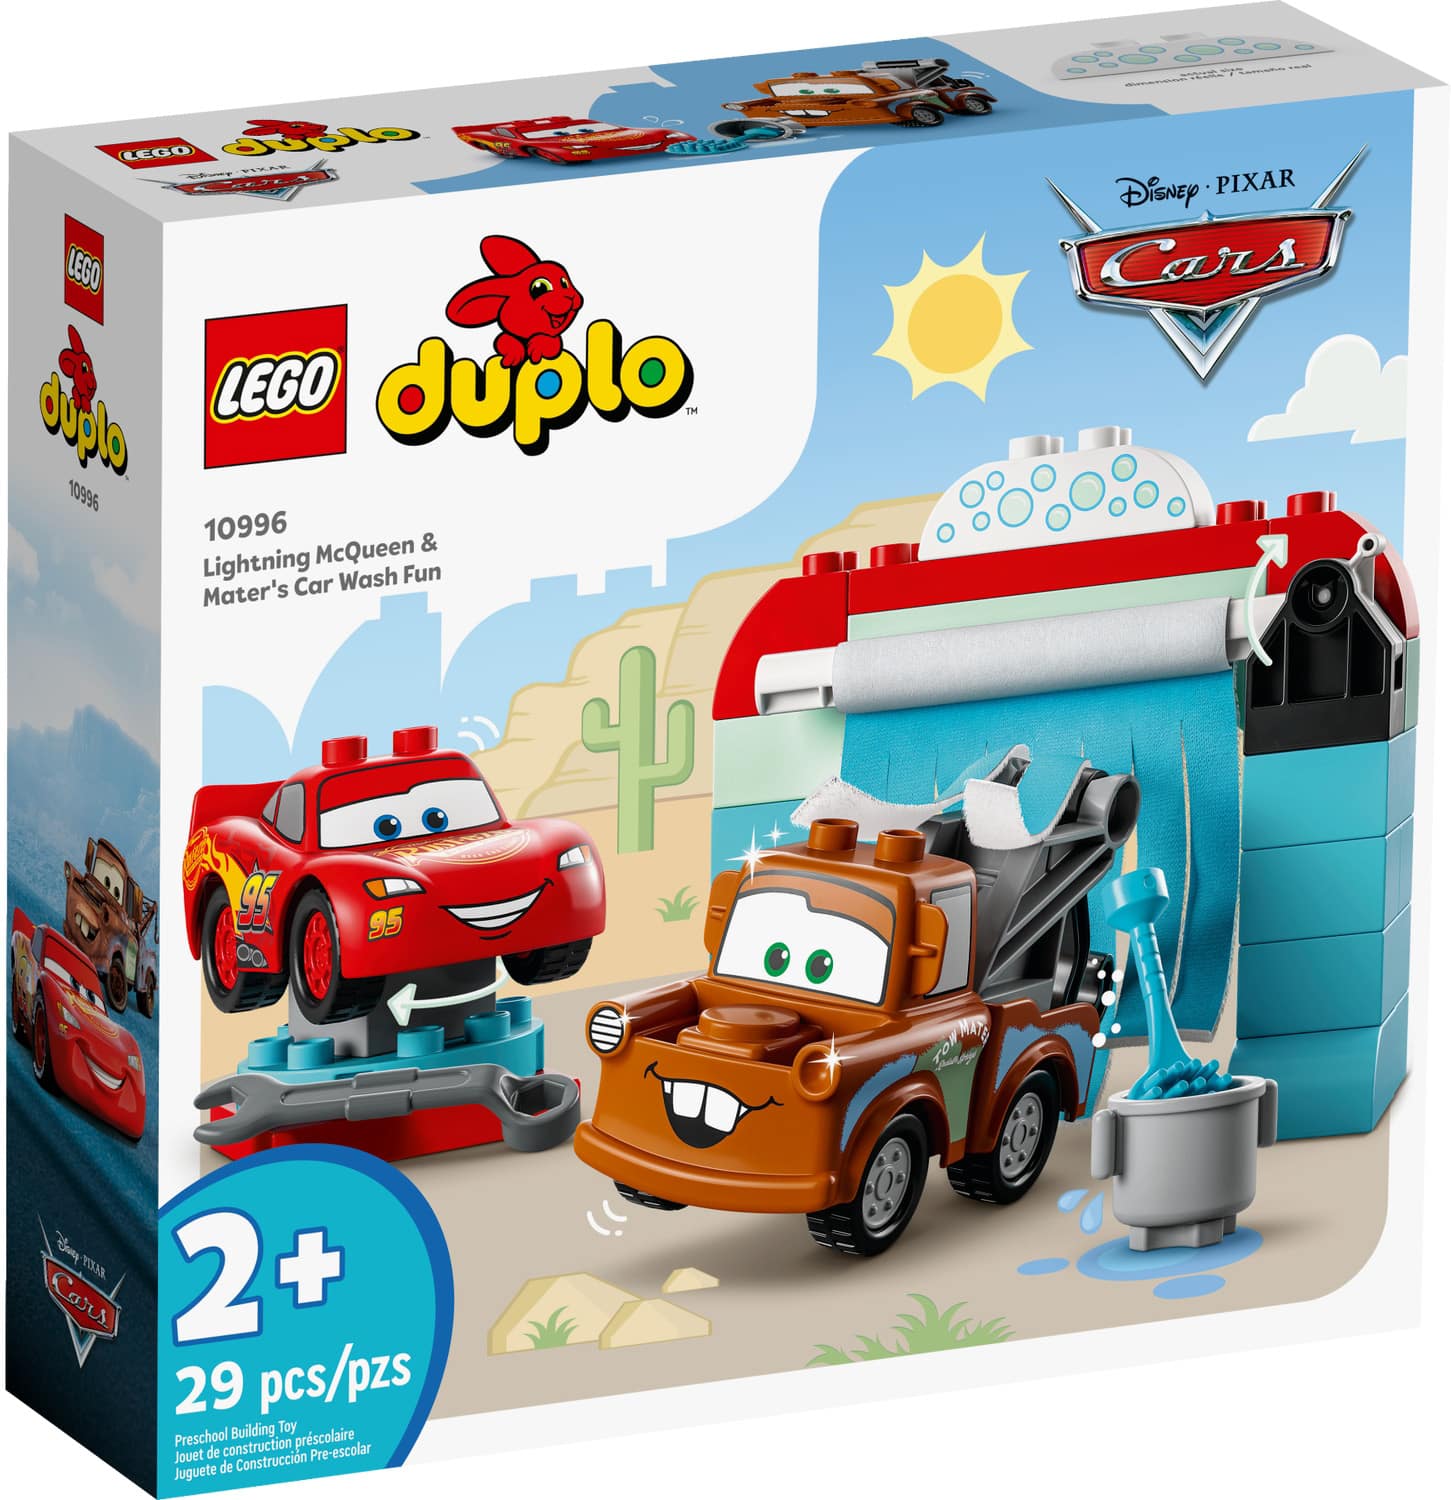 LEGO Duplo 10996 Lightning Mcqueen Und Mater In Der Waschanlage 3